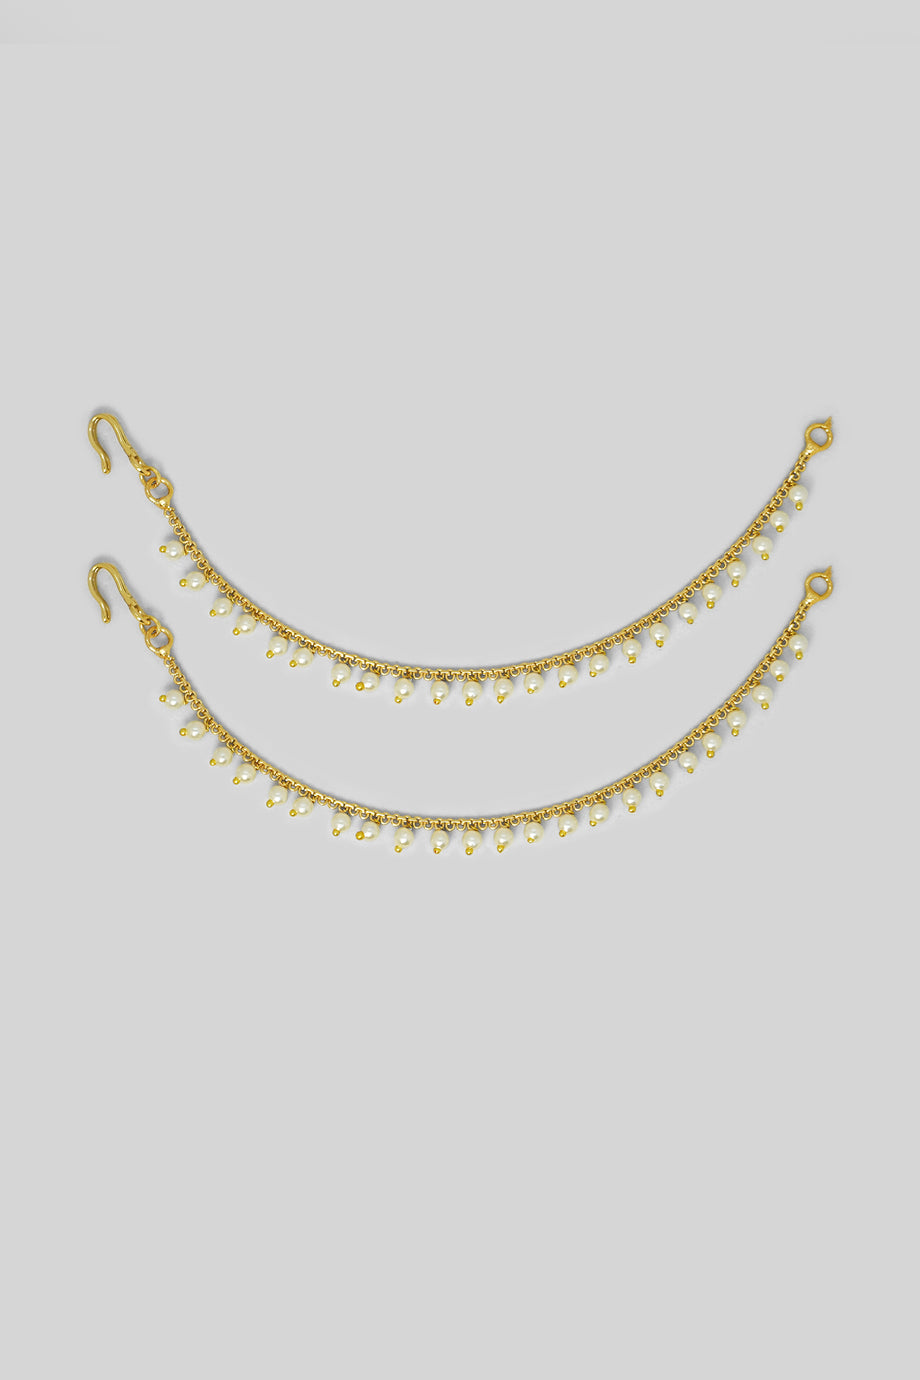 Stardust Chain Earrings - Yellow Gold – Glacier Mist